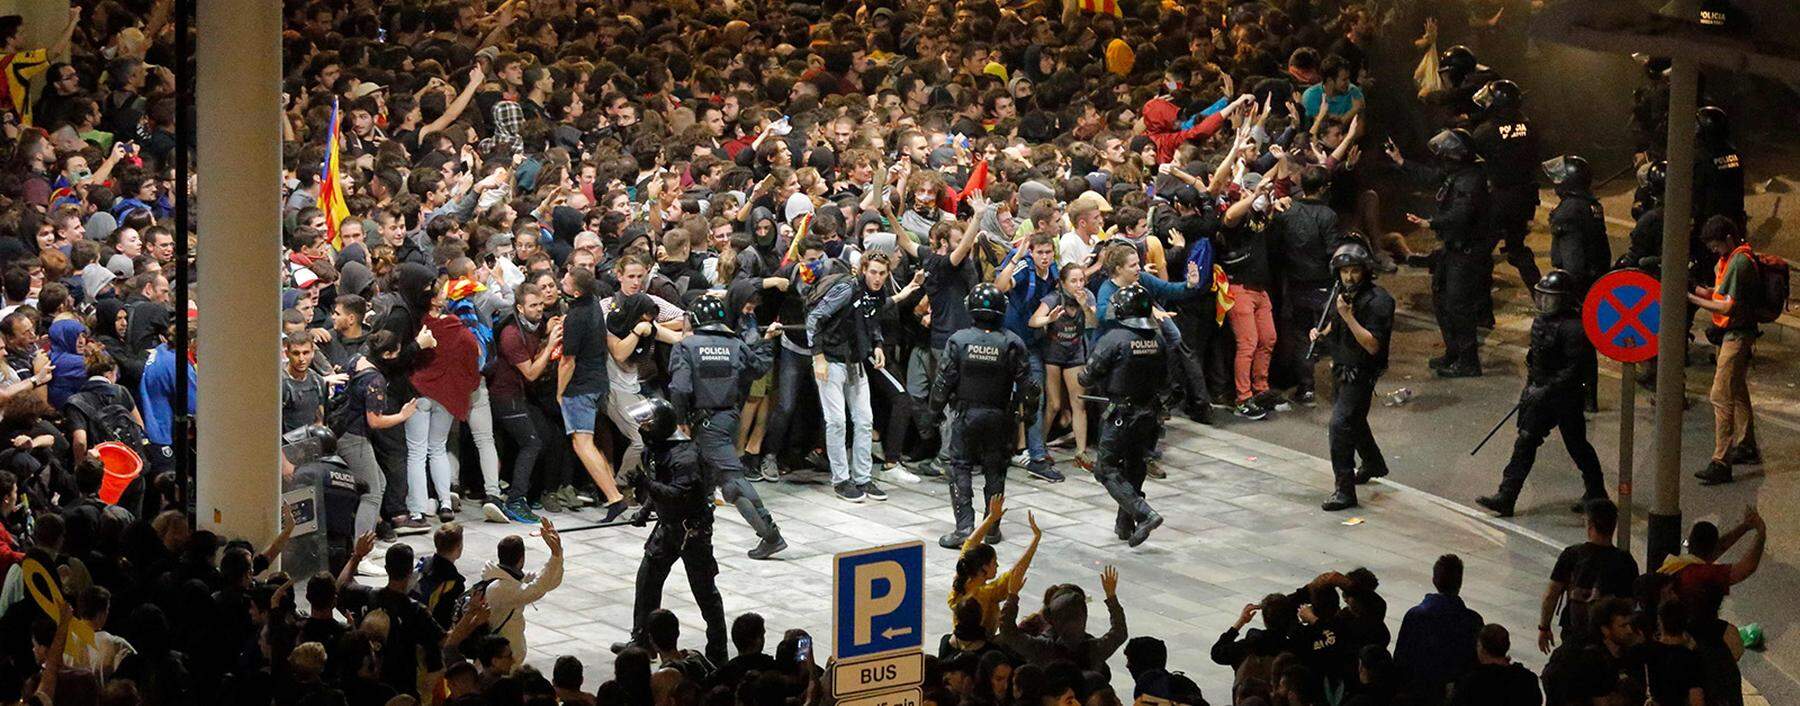 Massenproteste in Barcelona gegen die Verhaftung der katalanischen Separatistenführer.